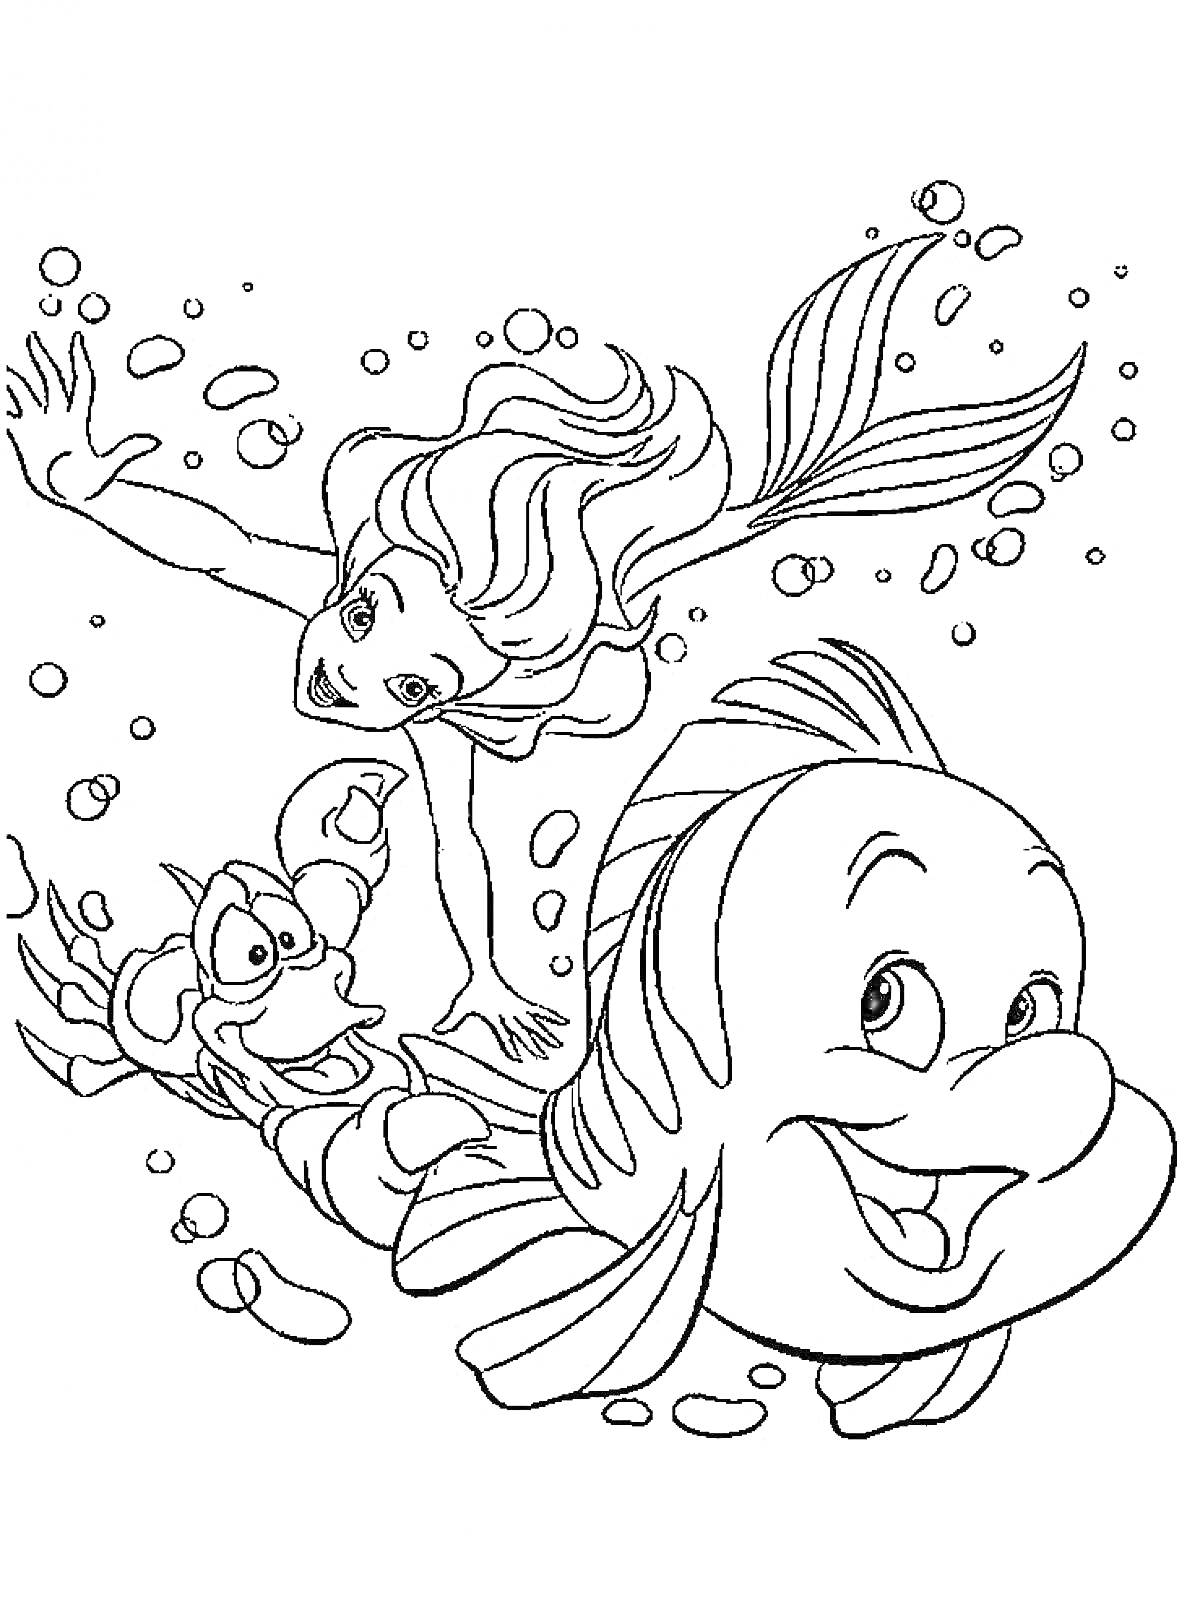 Ариэль русалочка, Флаундер и Себастьян плавают под водой среди пузырей